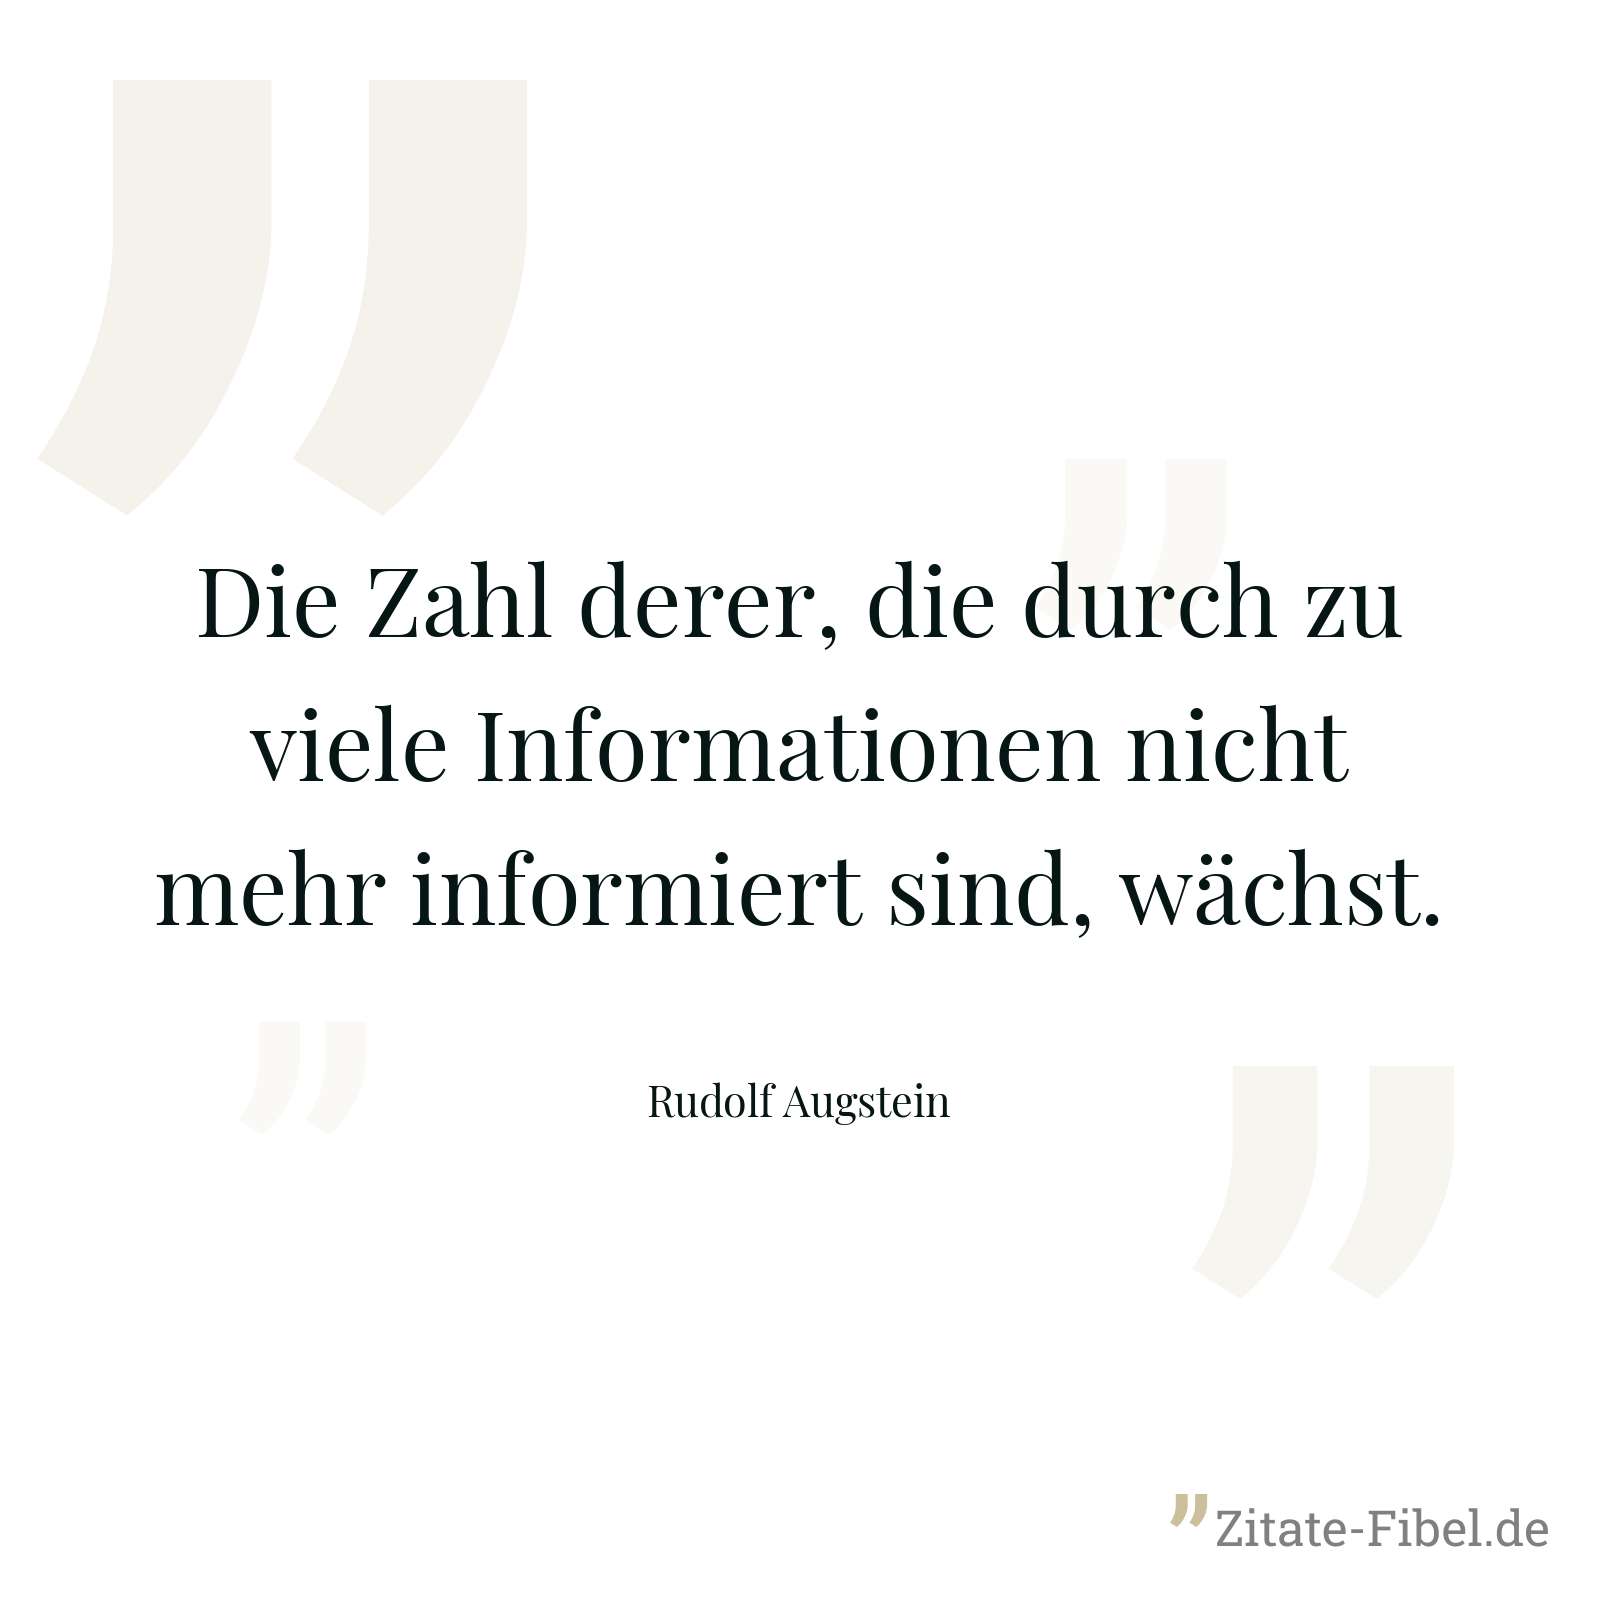 Die Zahl derer, die durch zu viele Informationen nicht mehr informiert sind, wächst. - Rudolf Augstein